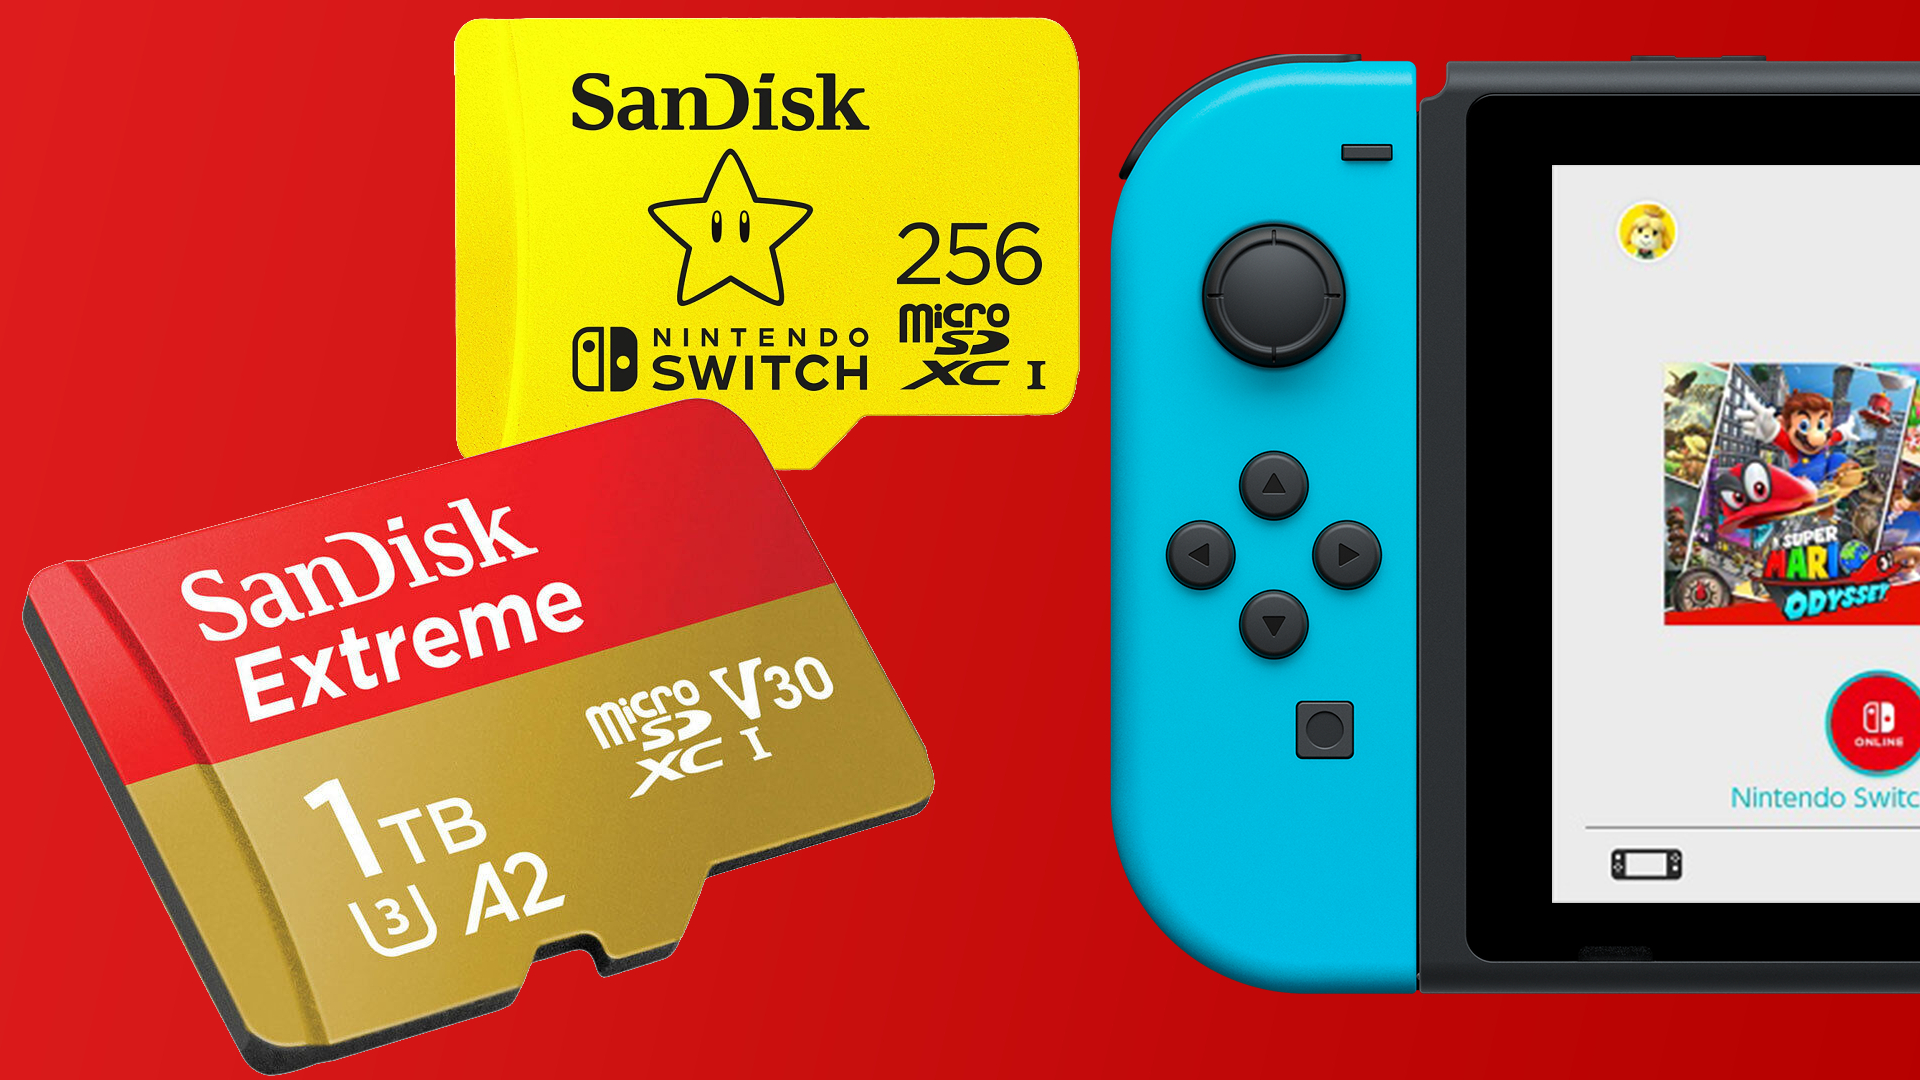 Carte mémoire micro sdxc SanDisk 128Go Fortnite microSDXC Carte pour Nintendo  Switch - Carte mémoire micro SD - Achat & prix